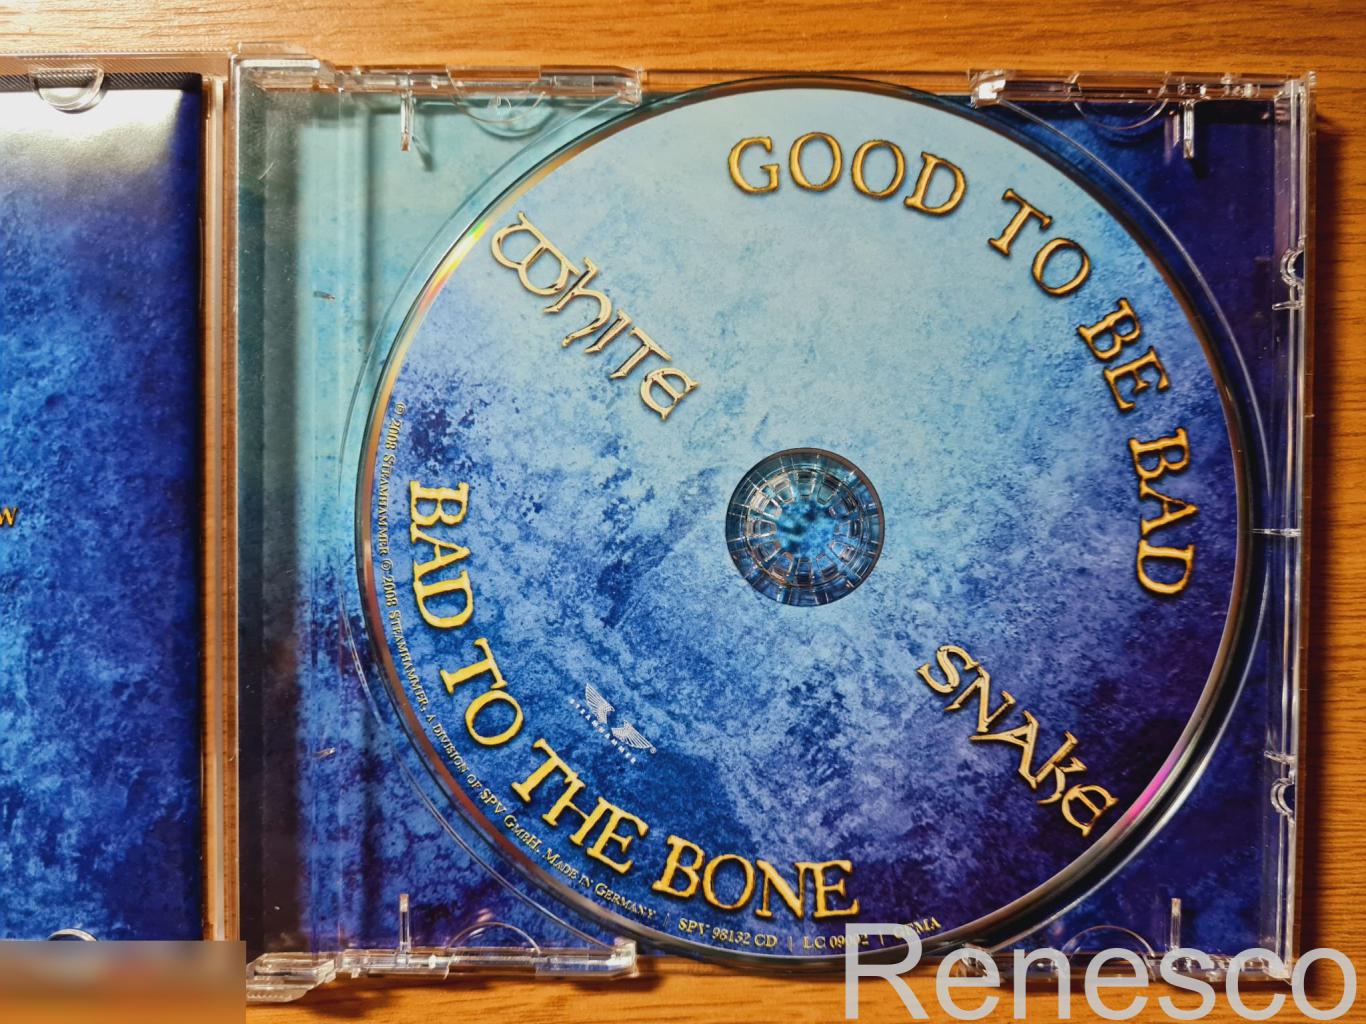 Whitesnake ?– Good To Be Bad (Germany) (2006) 4